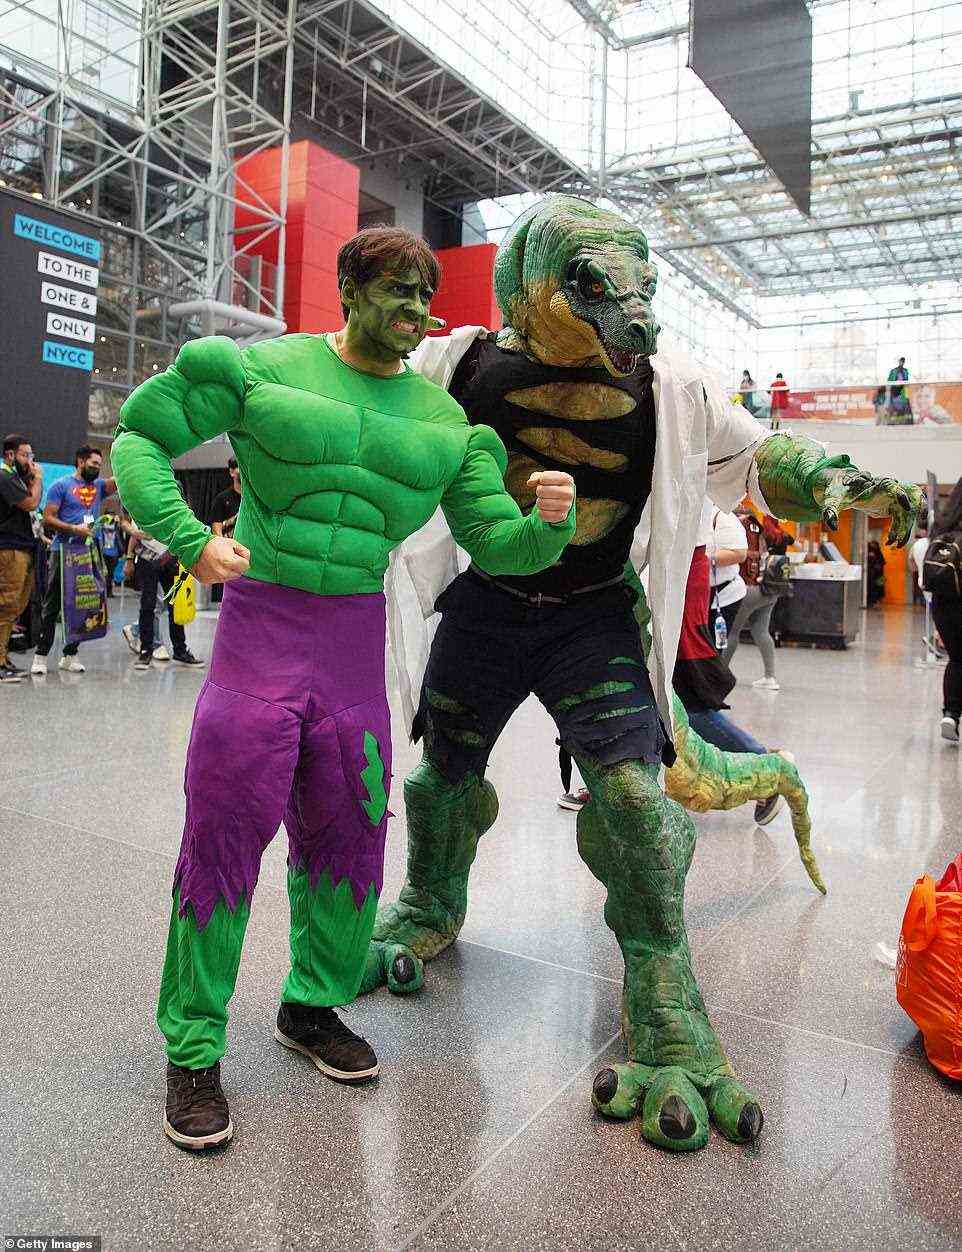 Ein Teil der Freude am Cosplay auf Conventions ist die Kombination von Charakteren aus verschiedenen Universen, die für Fotos posieren, wie dieser des Incredible Hulk